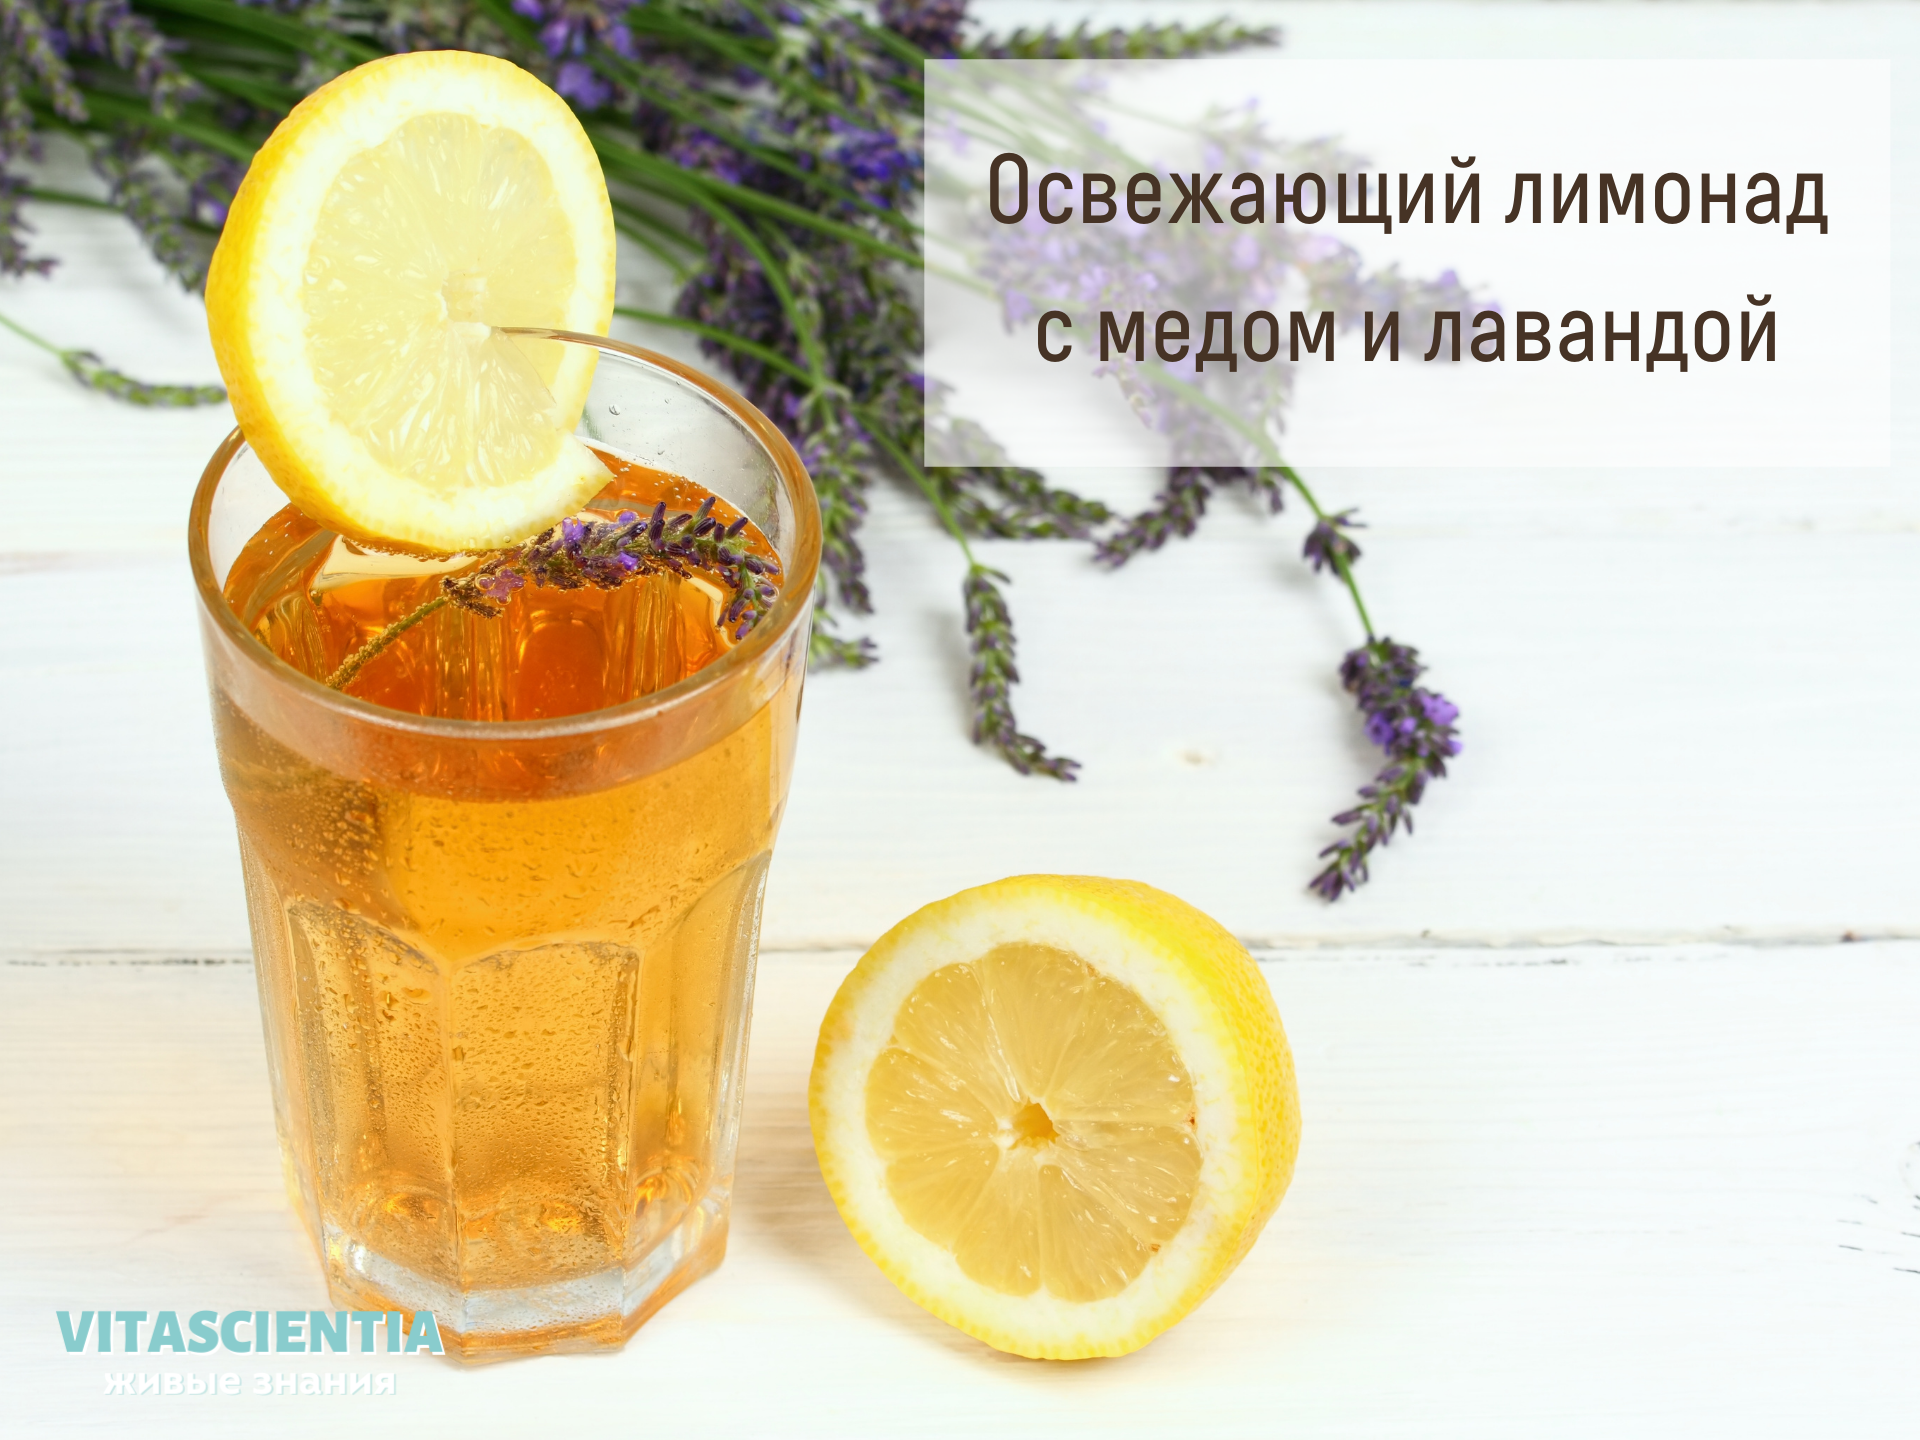 Рецепт освежающего лимонада с медом и лавандой